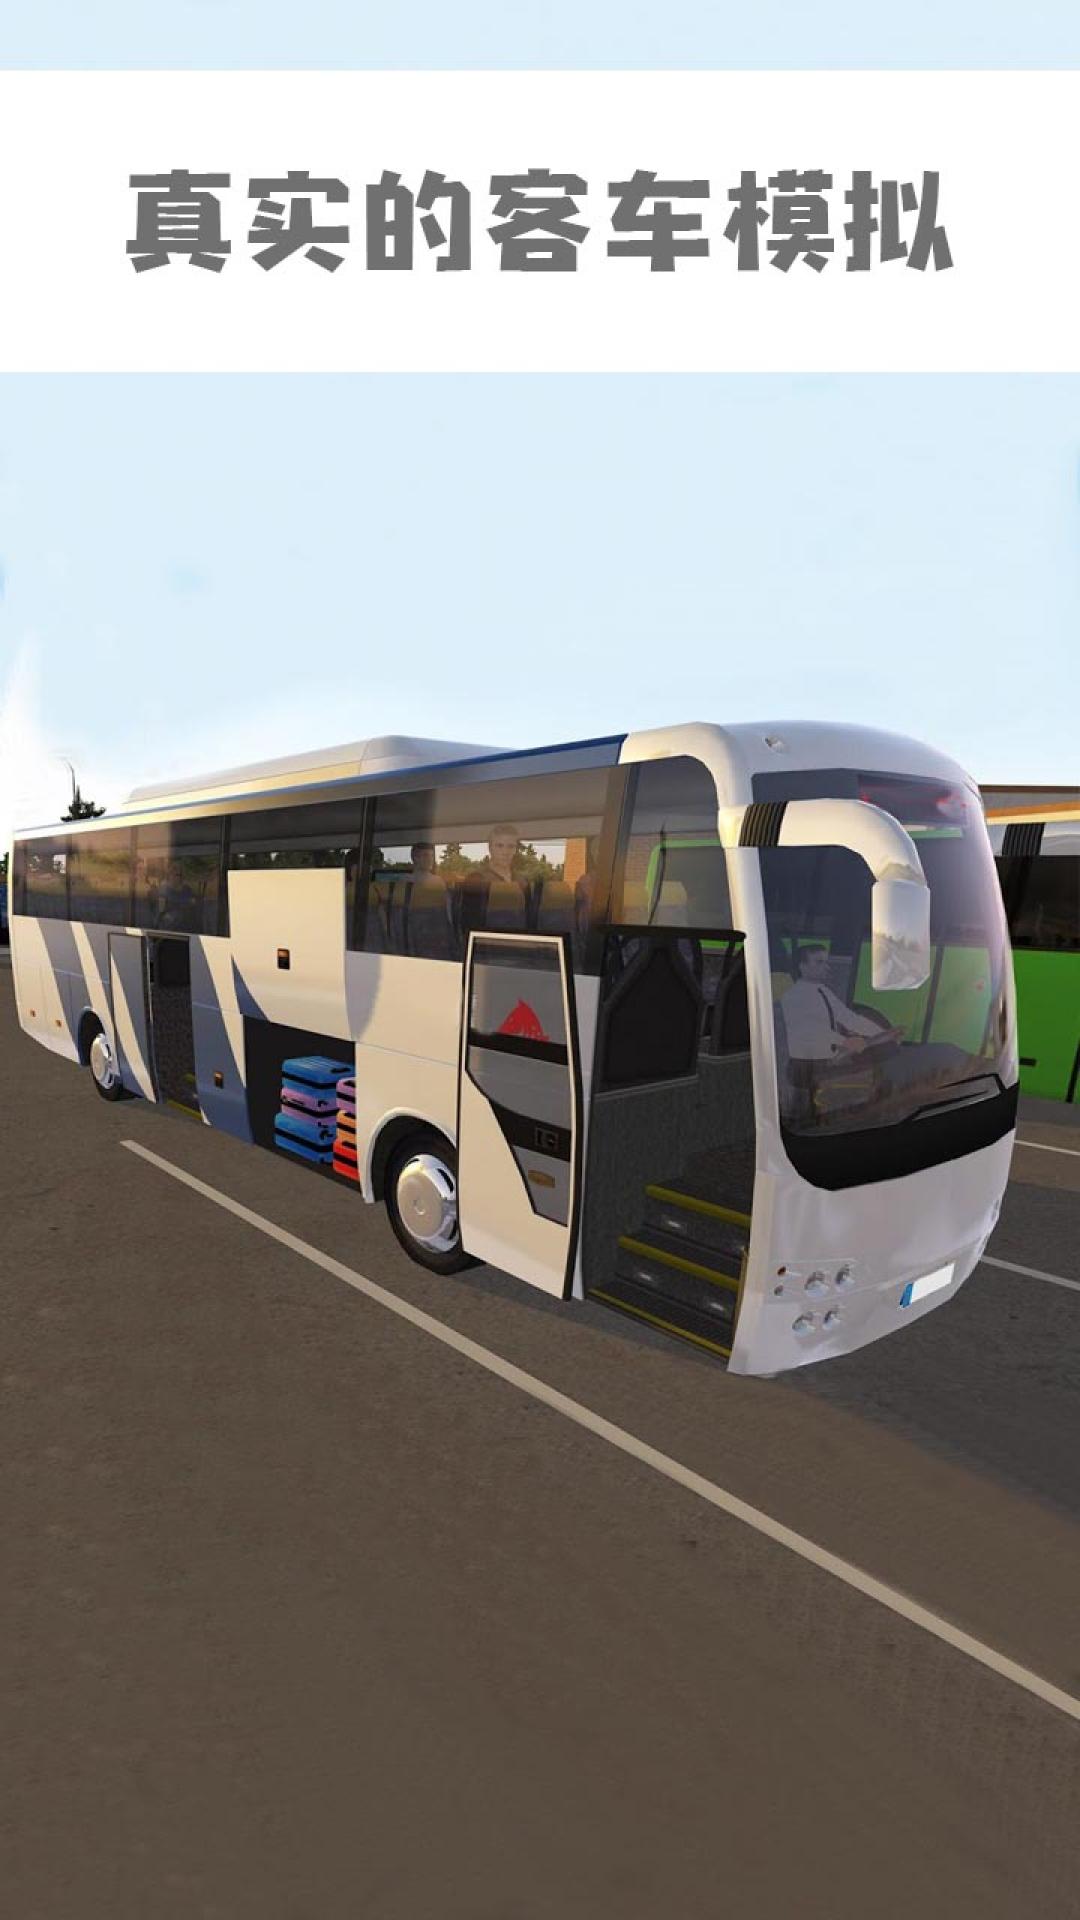 公交车模拟器破解版无限金币下载-公交车模拟器破解版游戏下载